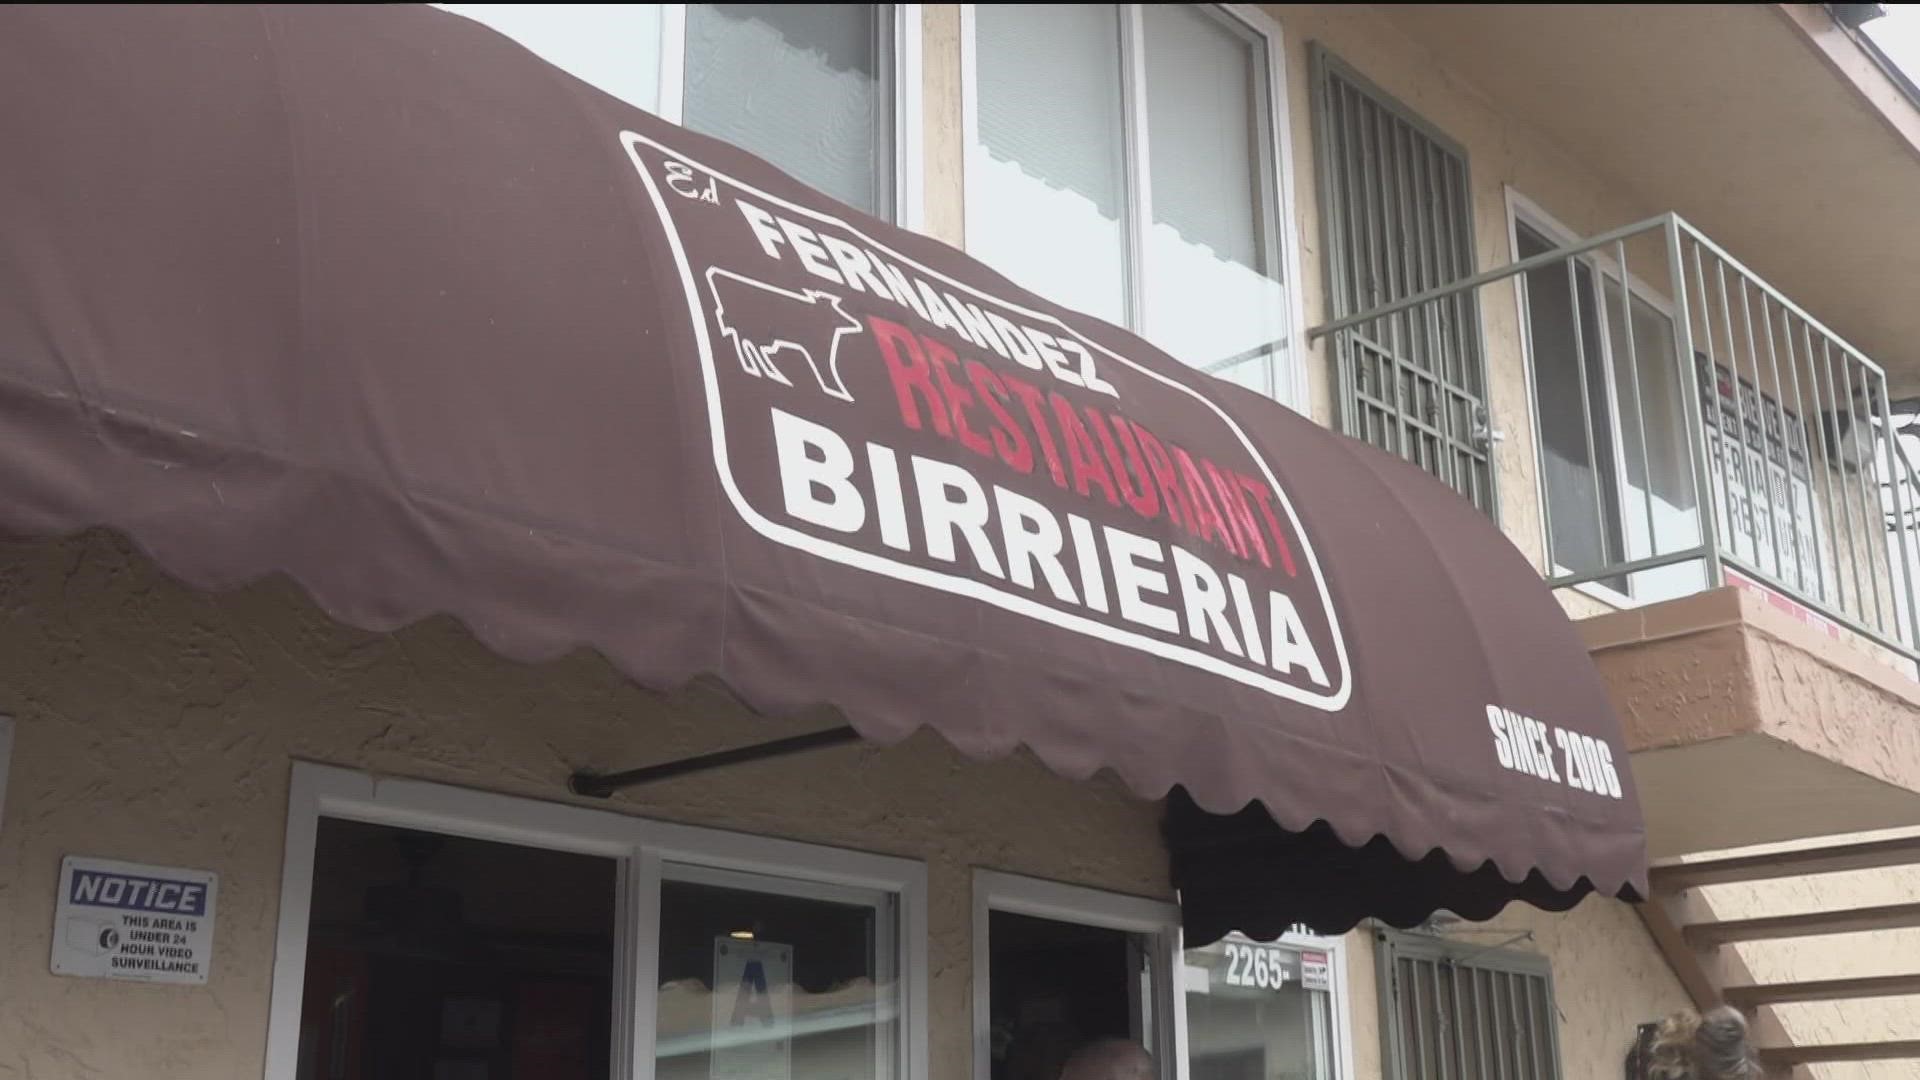 South Bay birrieria taco shop named best in U.S. | cbs8.com